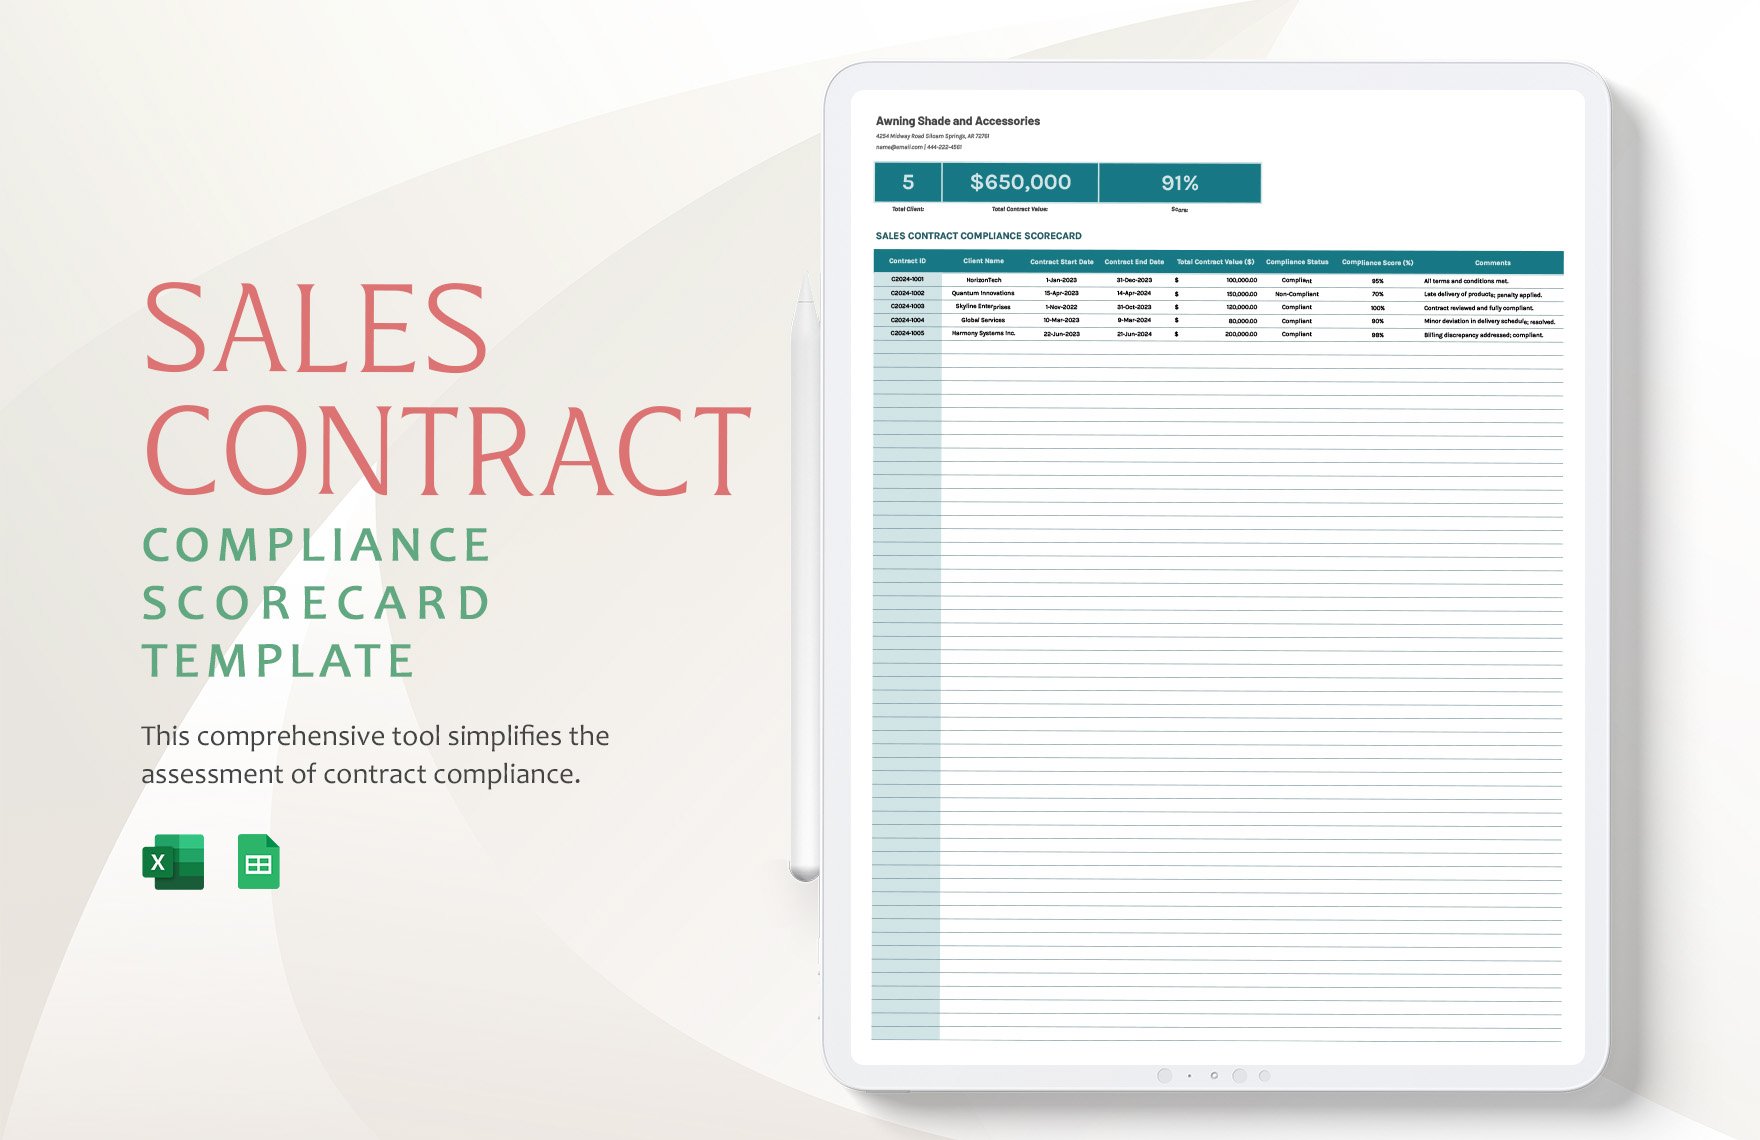 Sales Contract Compliance Scorecard Template